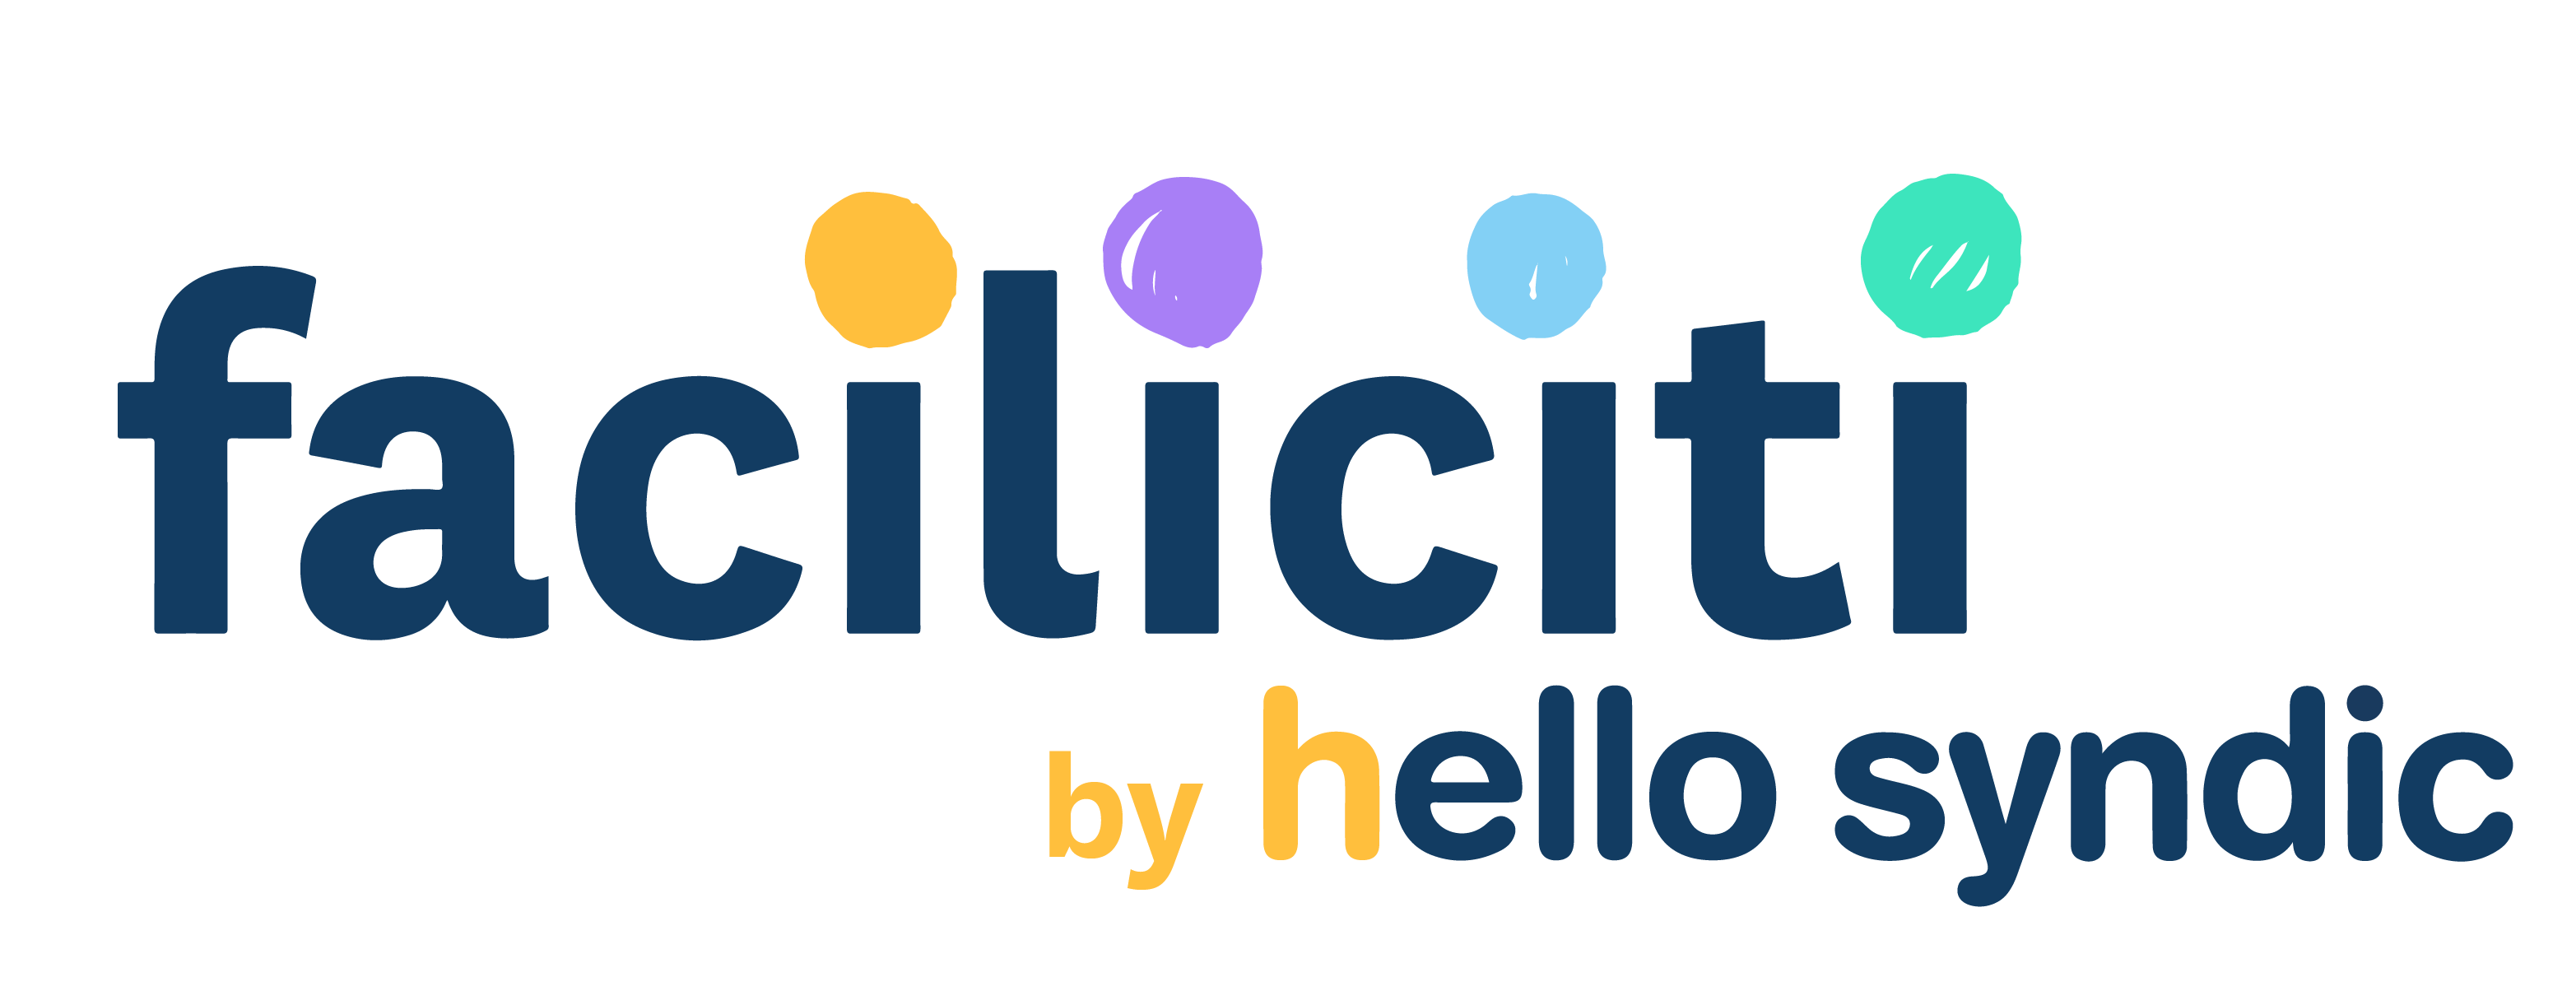 logo-facilicitibyhellosyndic